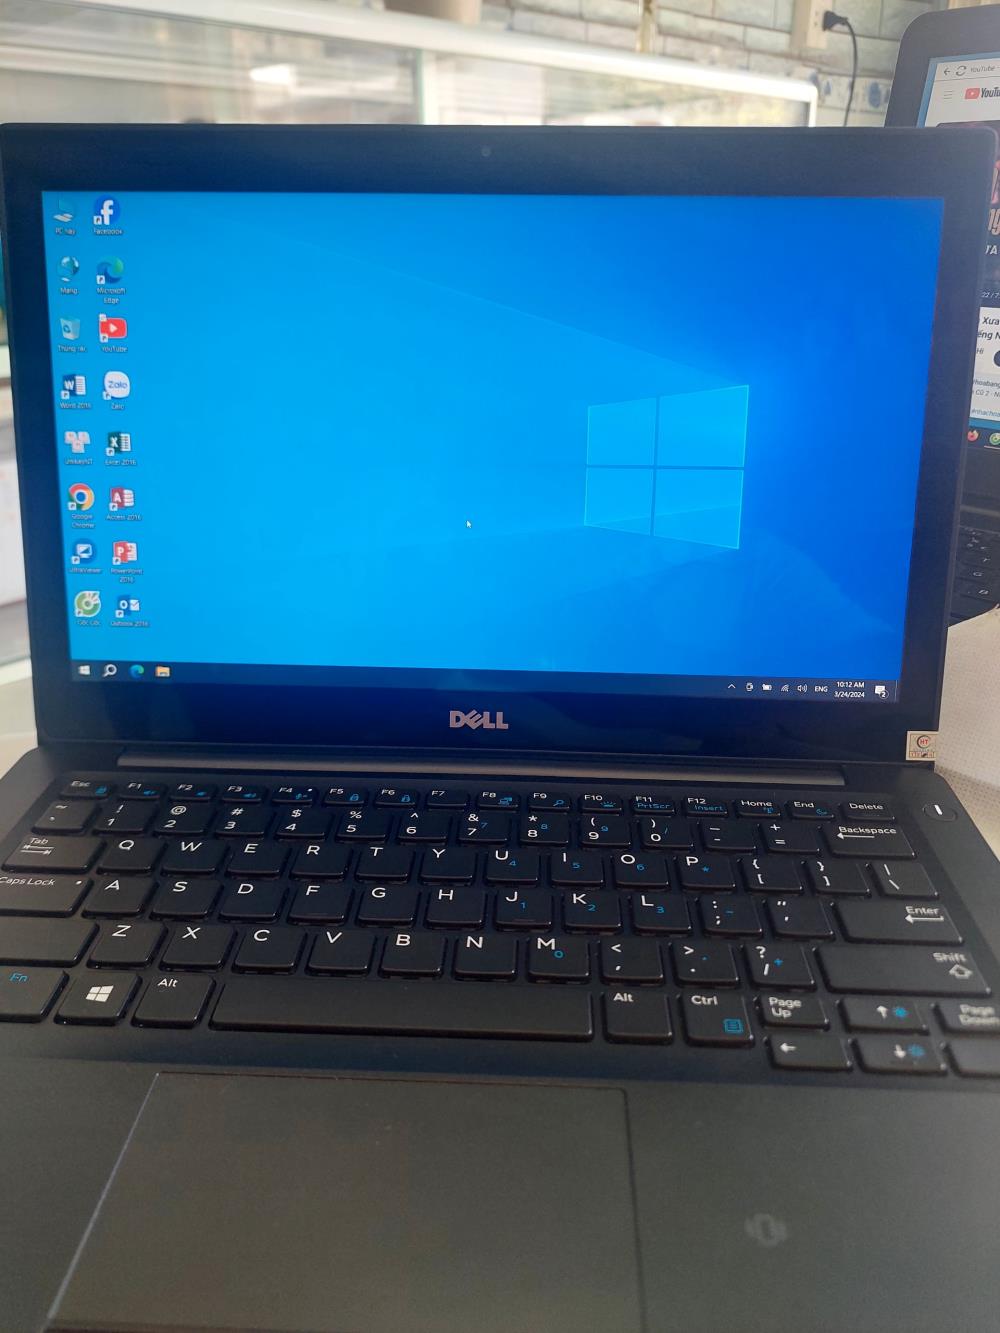 SUPER SALE: Laptop Dell Chính Hãng - Giá Cực Sốc Chỉ Từ 4 Triệu!1434315